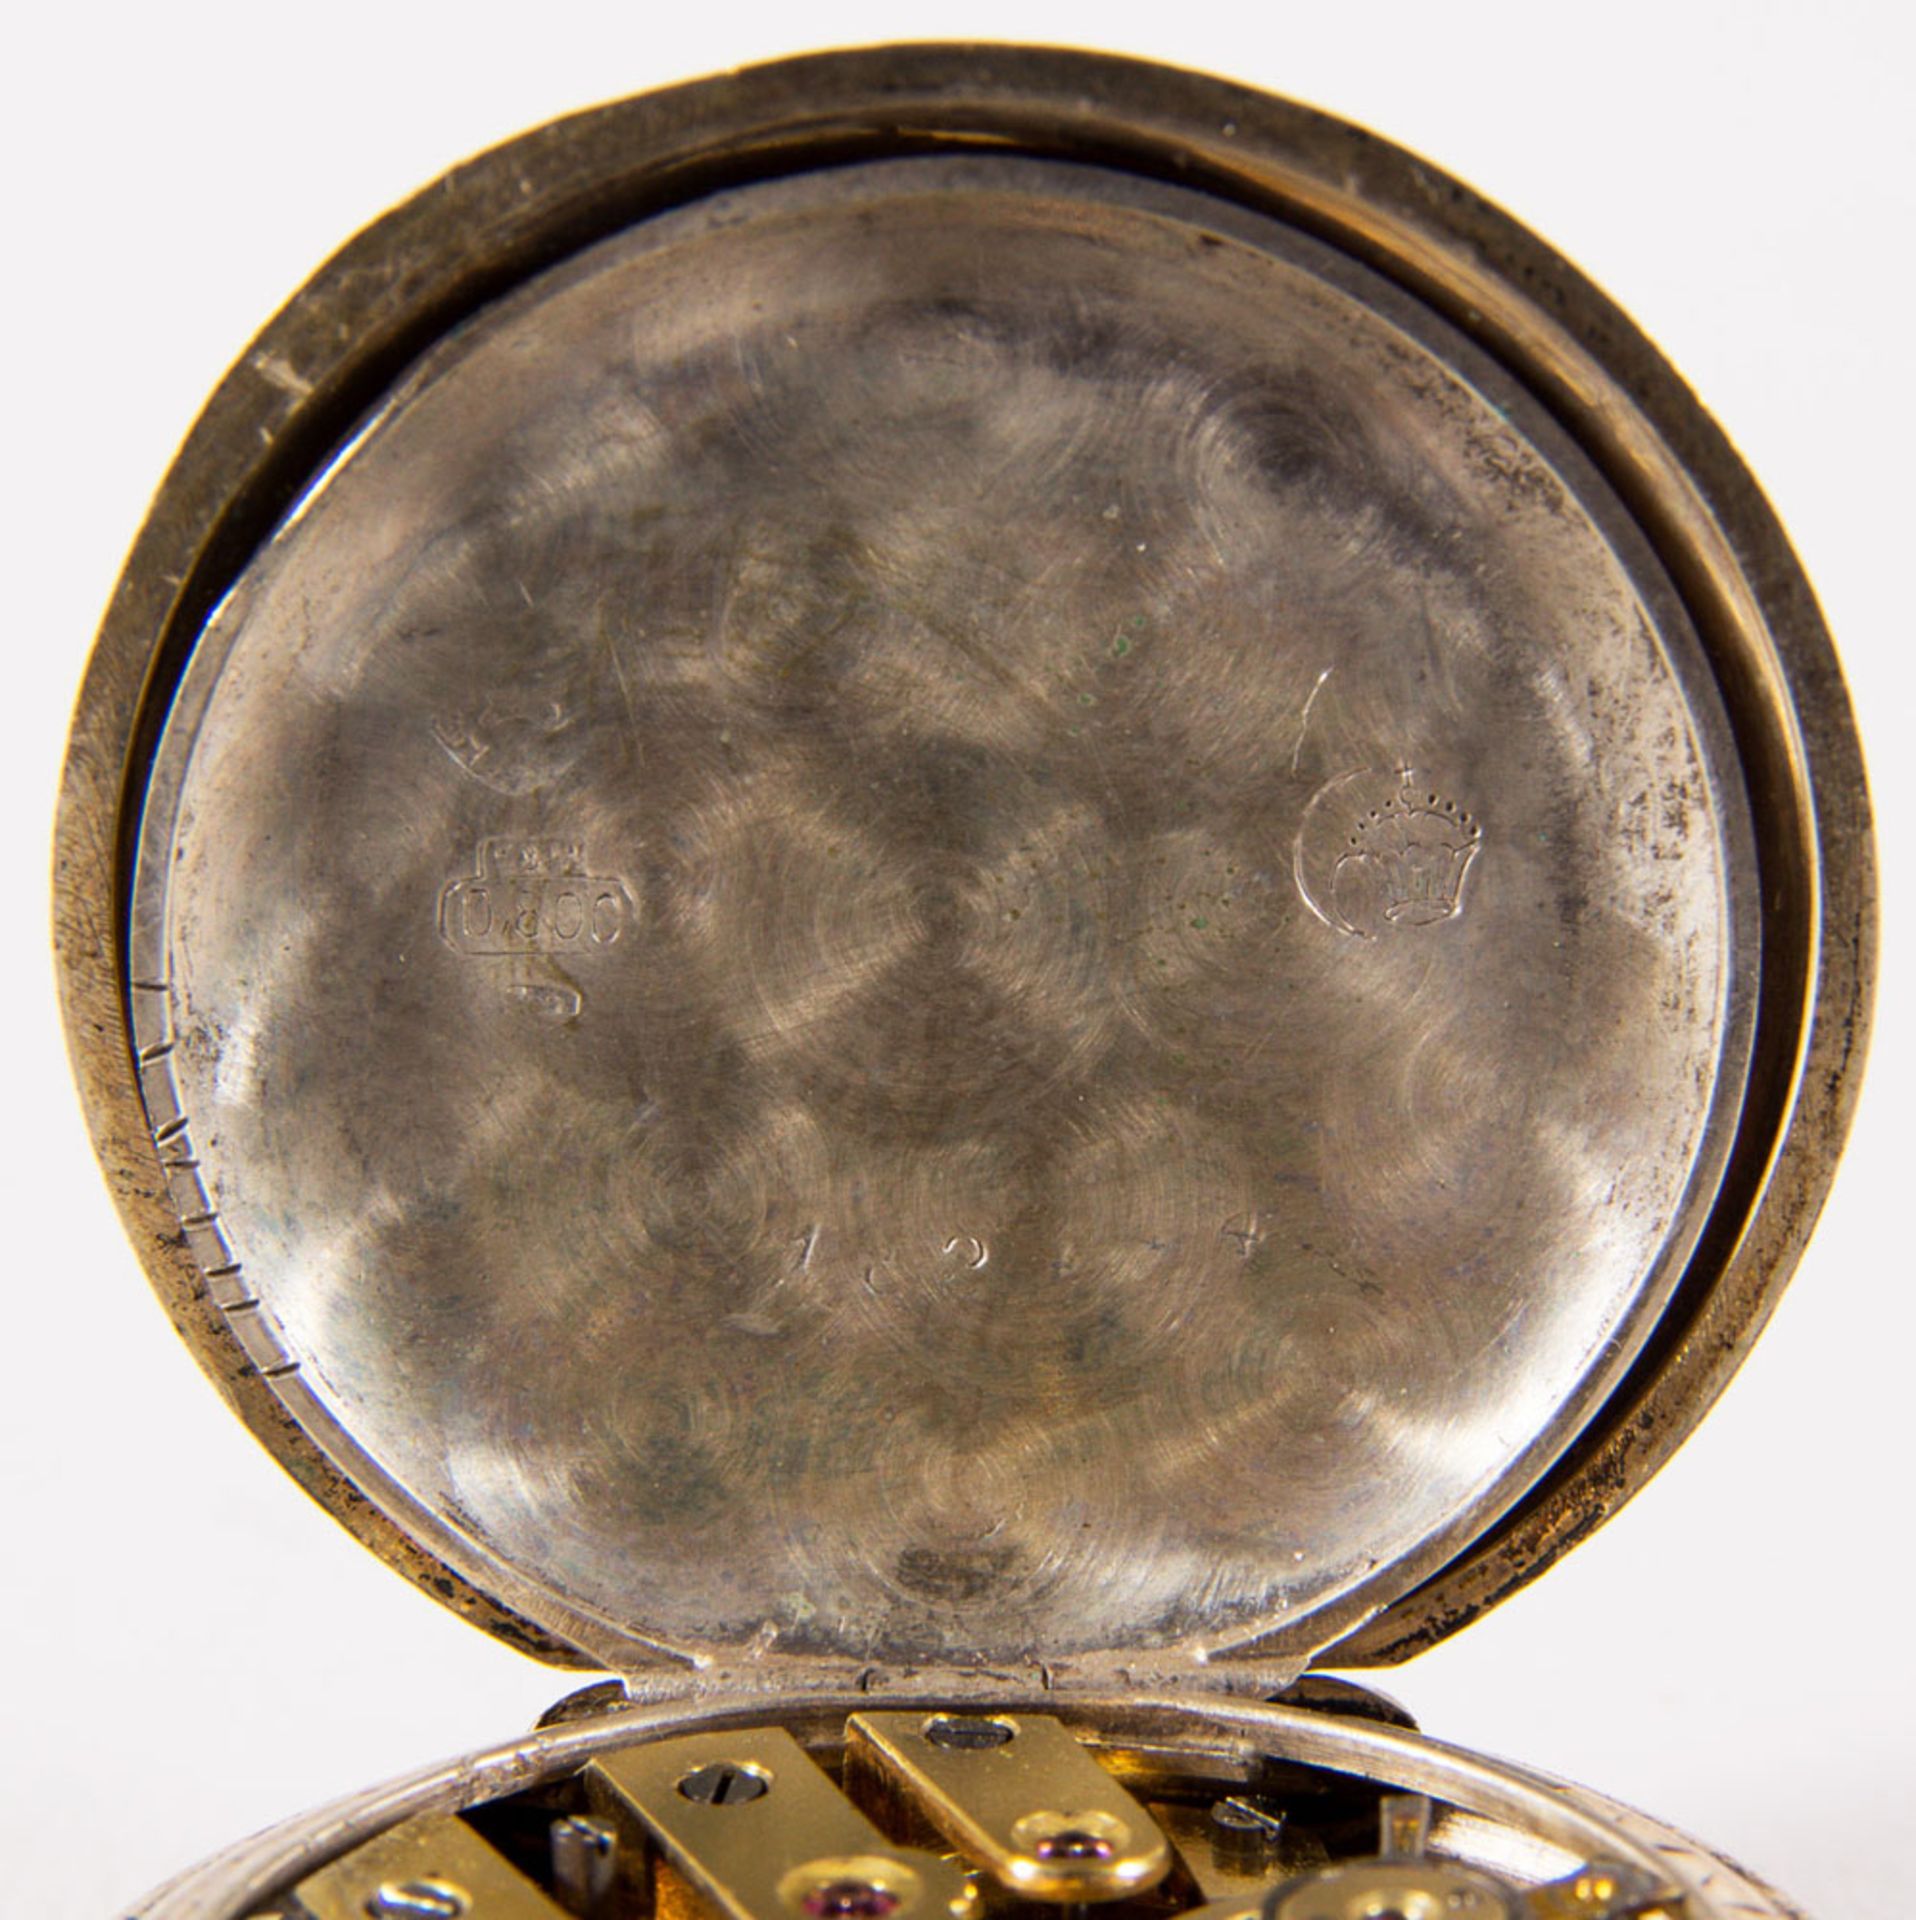 Antike Damentaschenuhr um 1900 in orig. Kartonage. Werk läuft an. Durchmesser ca 30mm. - Image 6 of 10